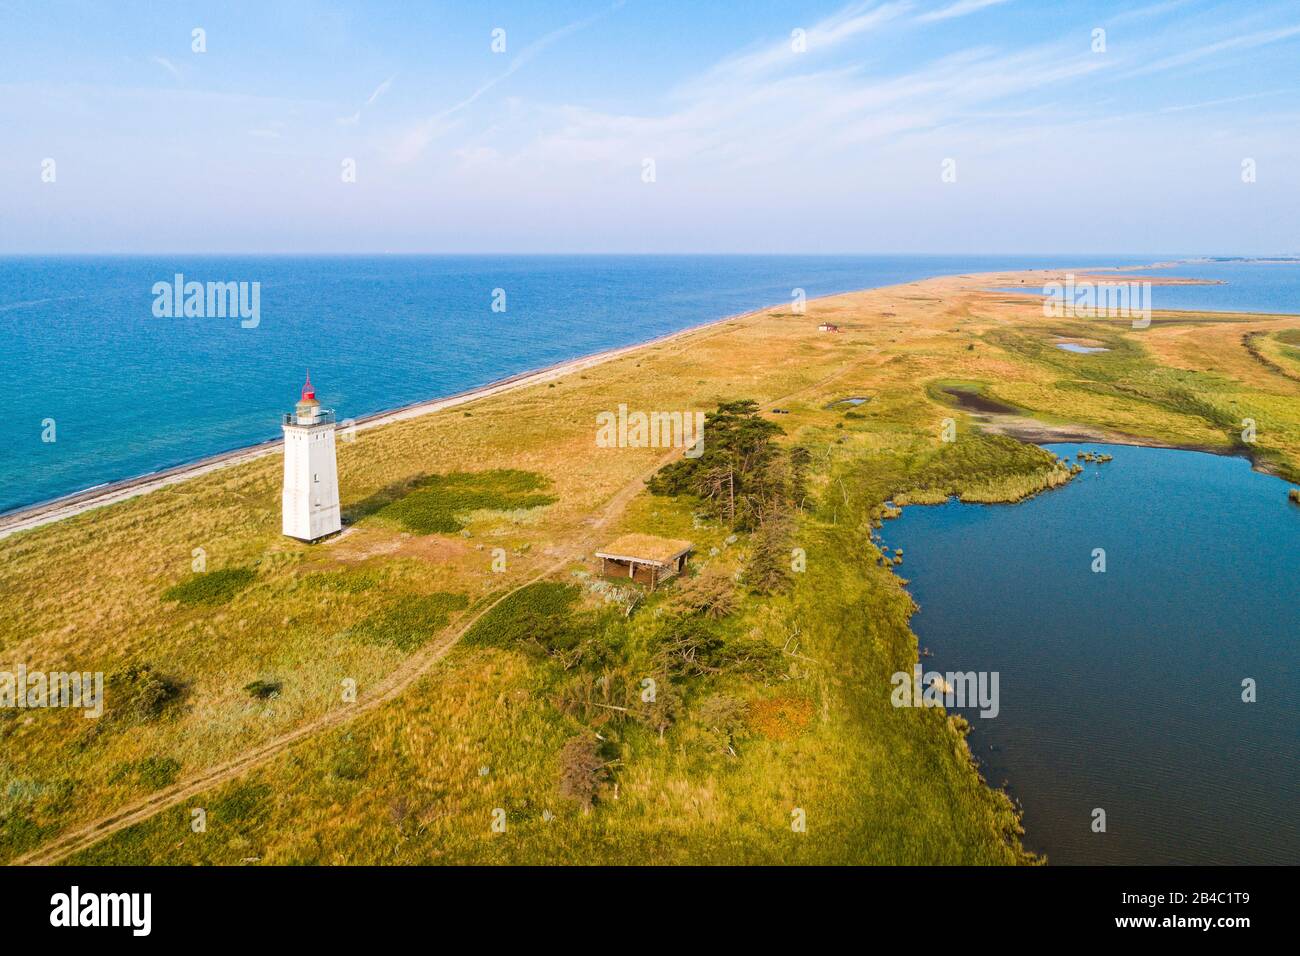 The lighthouse Hyllekrok Fyr on the danish island Lolland. The lighthouse was build in 1905. Stock Photo